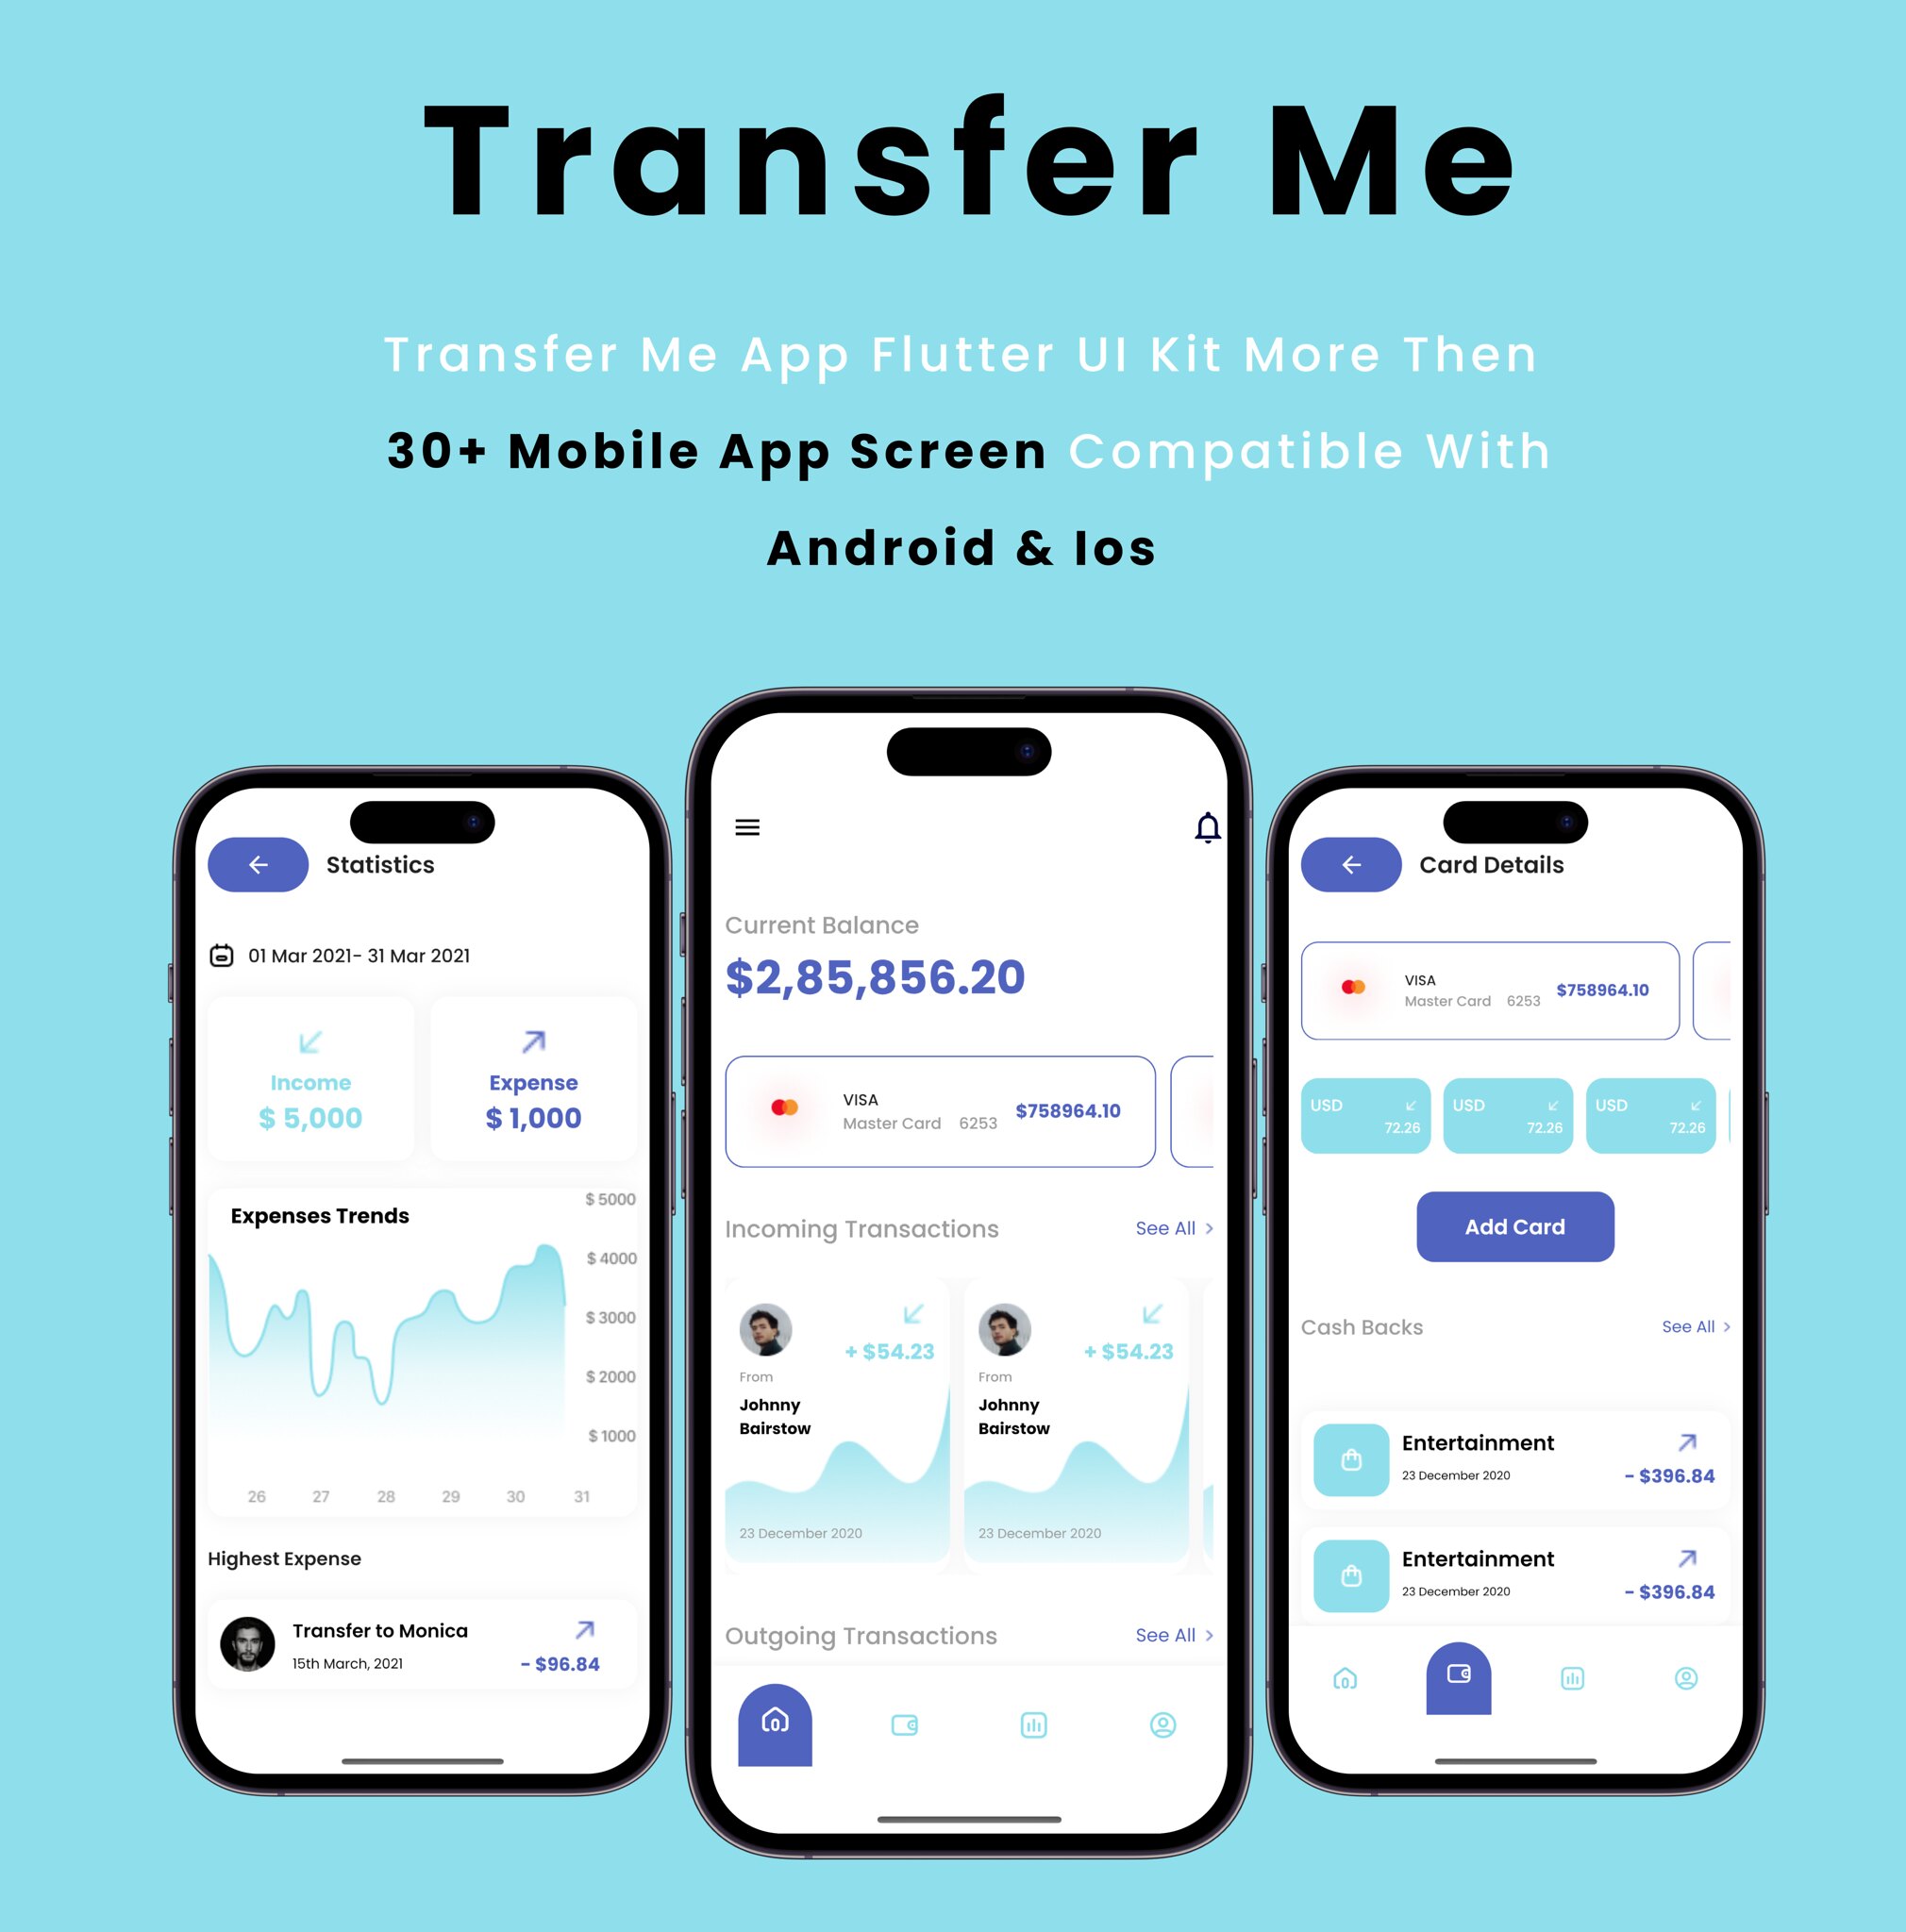 Transfer Me App - Flutter Mobile App Template